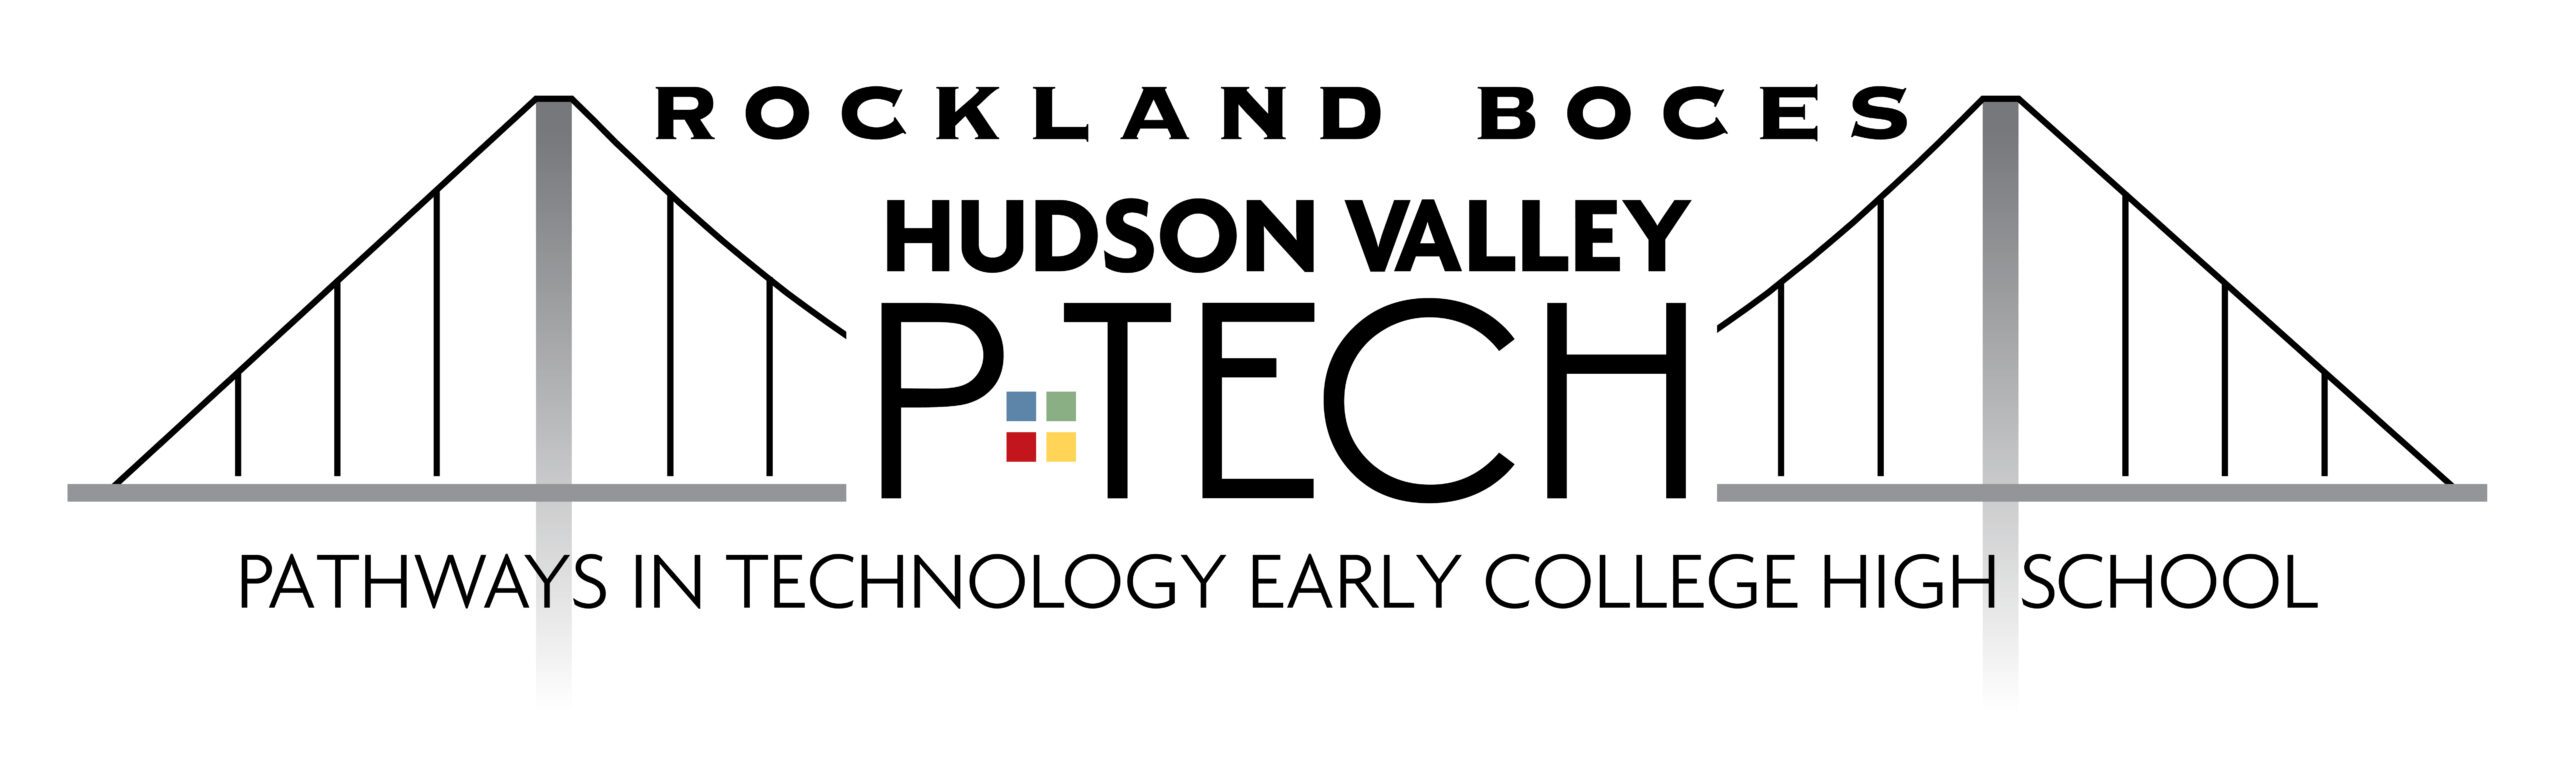 Rockland BOCES Hudson Valley P TECH logo